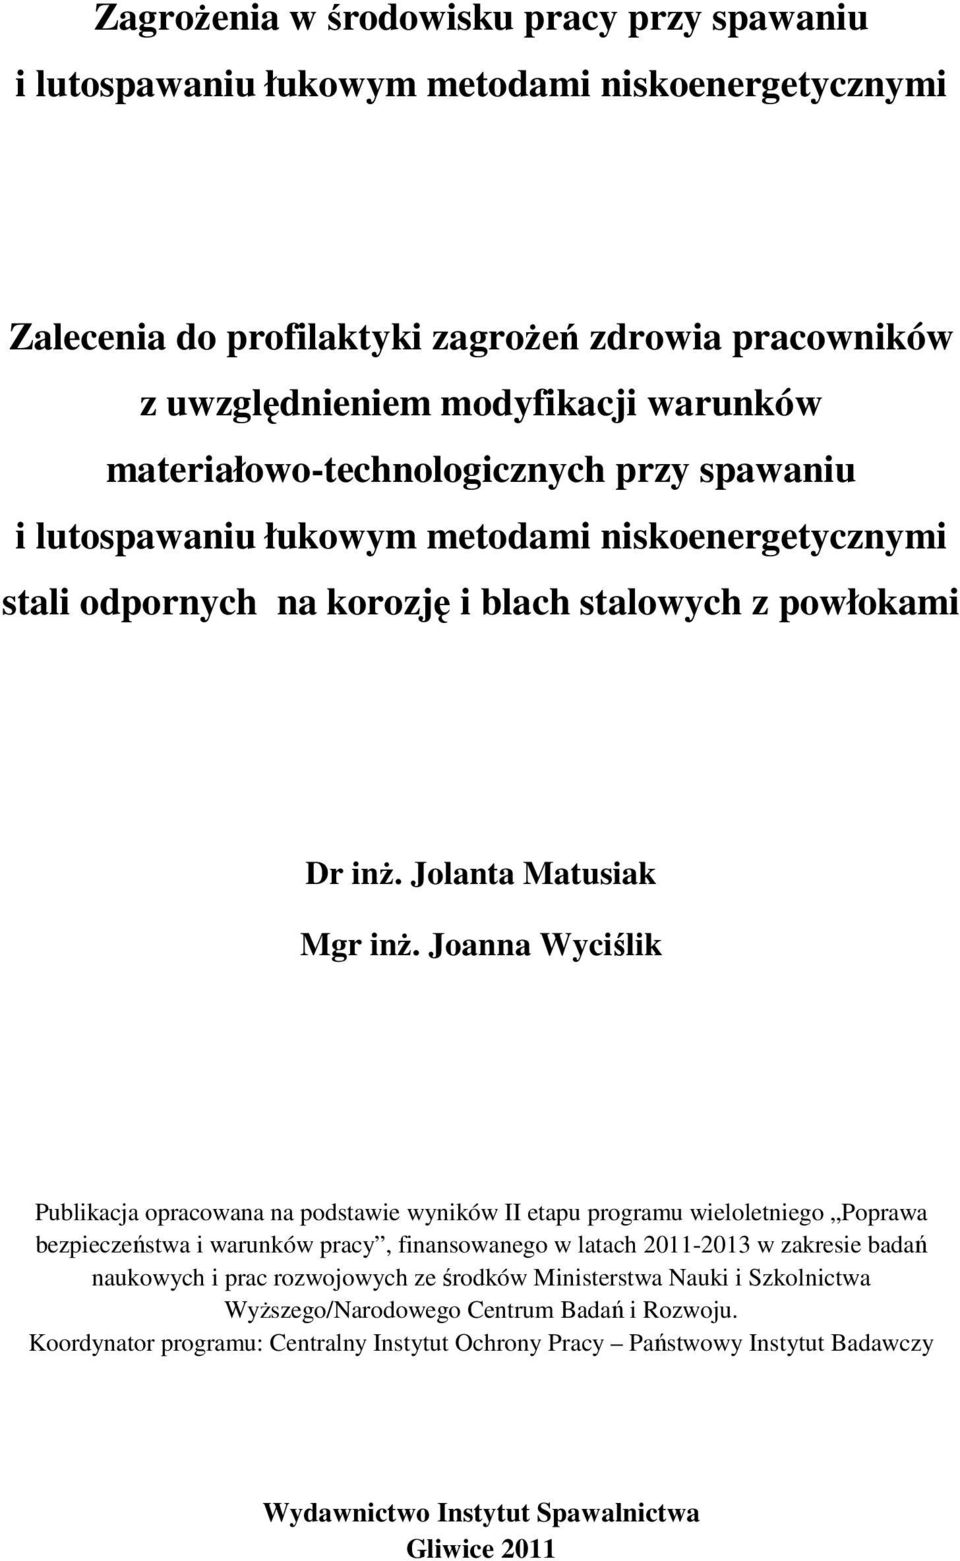 Joanna Wyciślik Publikacja opracowana na podstawie wyników II etapu programu wieloletniego Poprawa bezpieczeństwa i warunków pracy, finansowanego w latach 2011-2013 w zakresie badań naukowych i prac